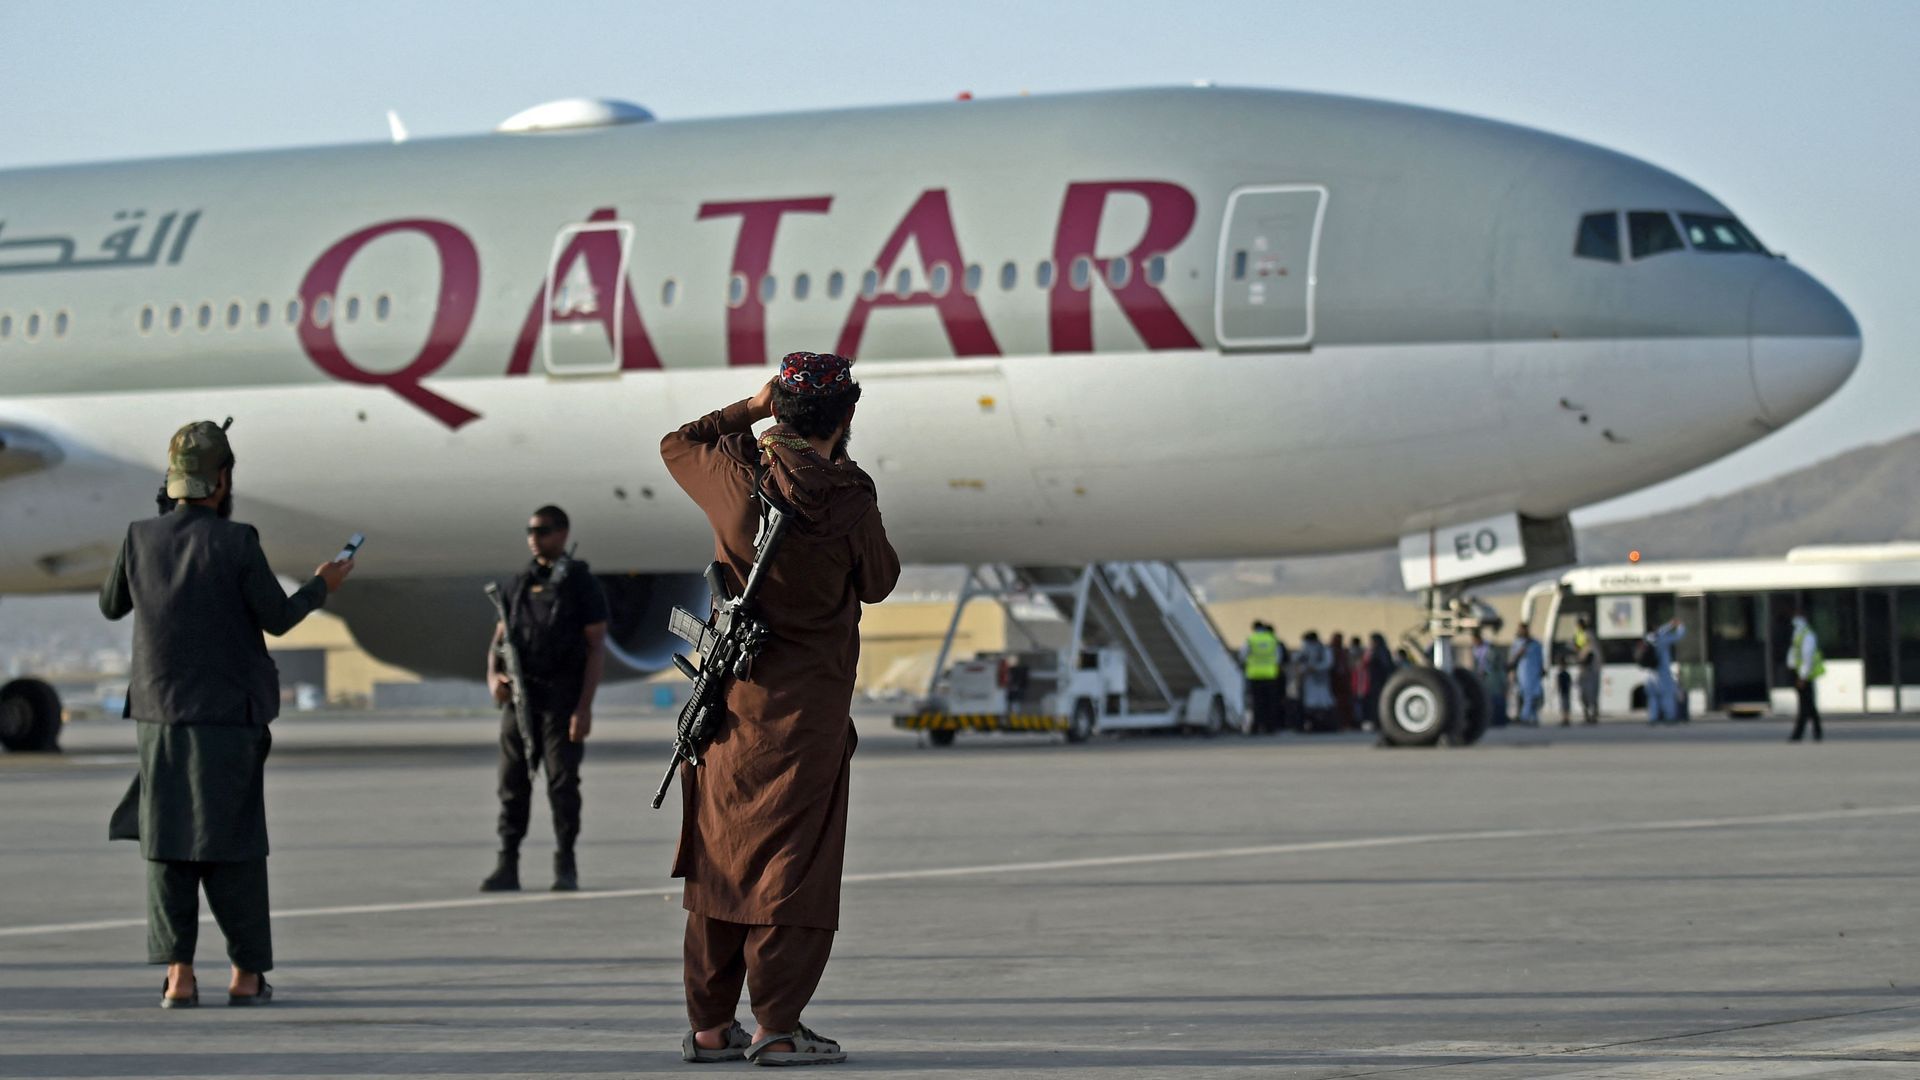 Taliban fighter standing next to Qatar Airways flight